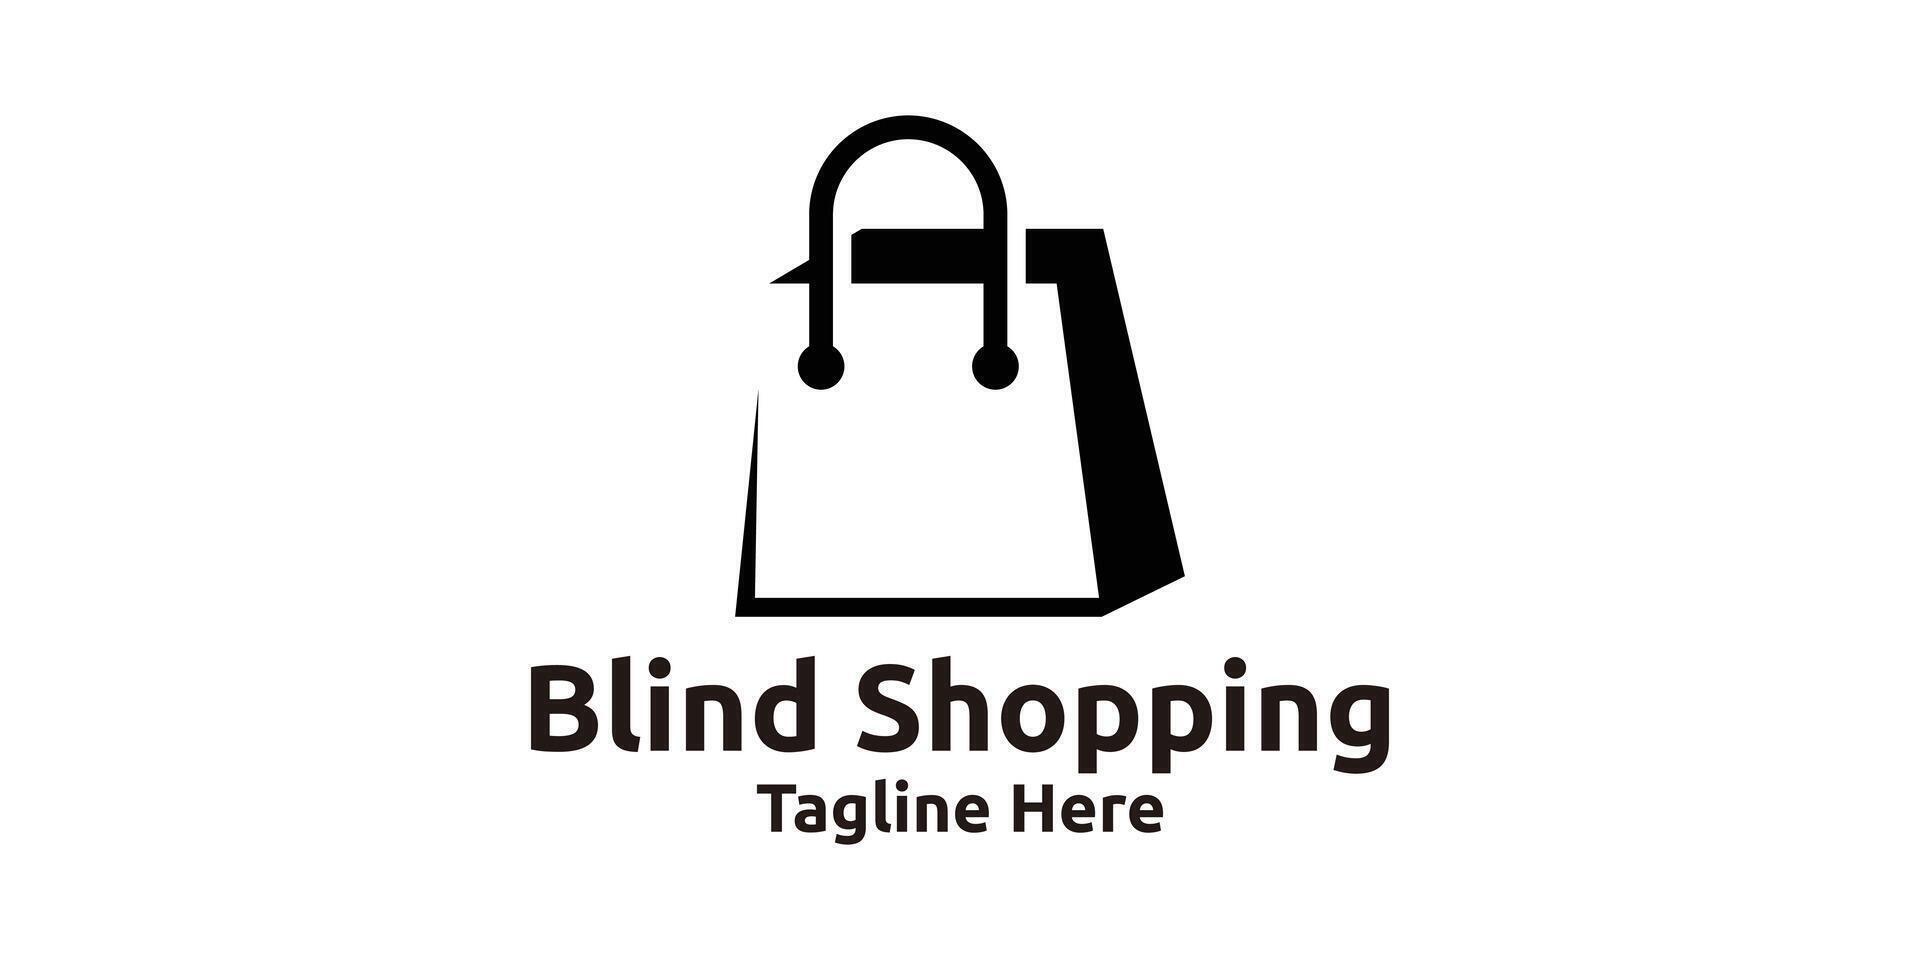 shopping bag logo design, negative space logo, creative logo design, template, symbol, icon, idea. vector